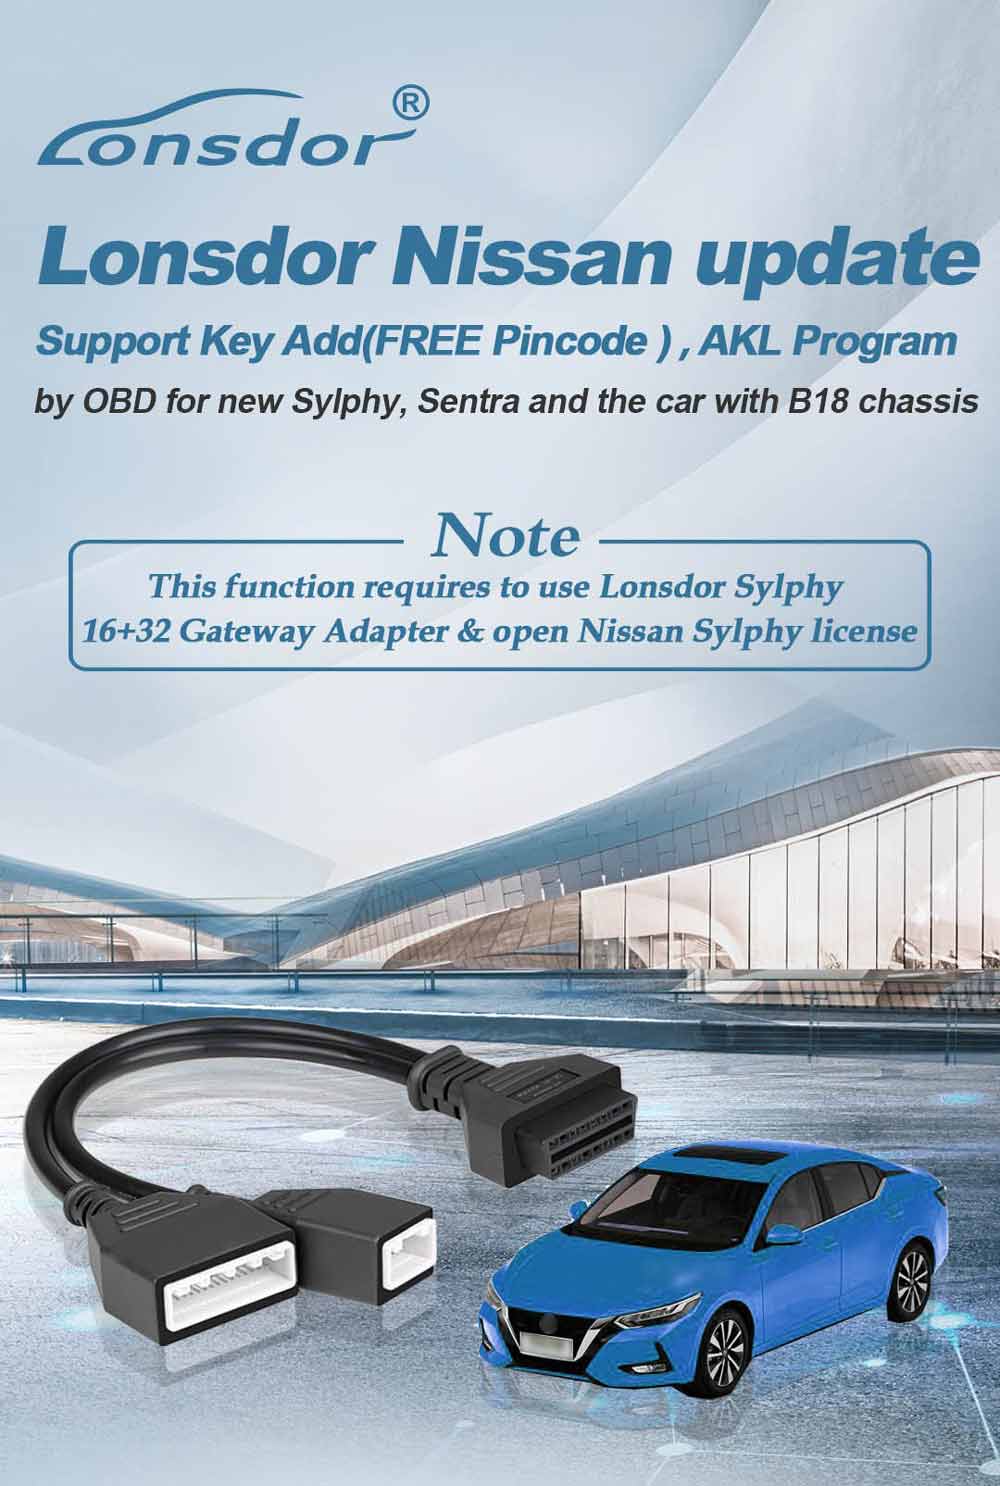 Lonsdor Nissan update